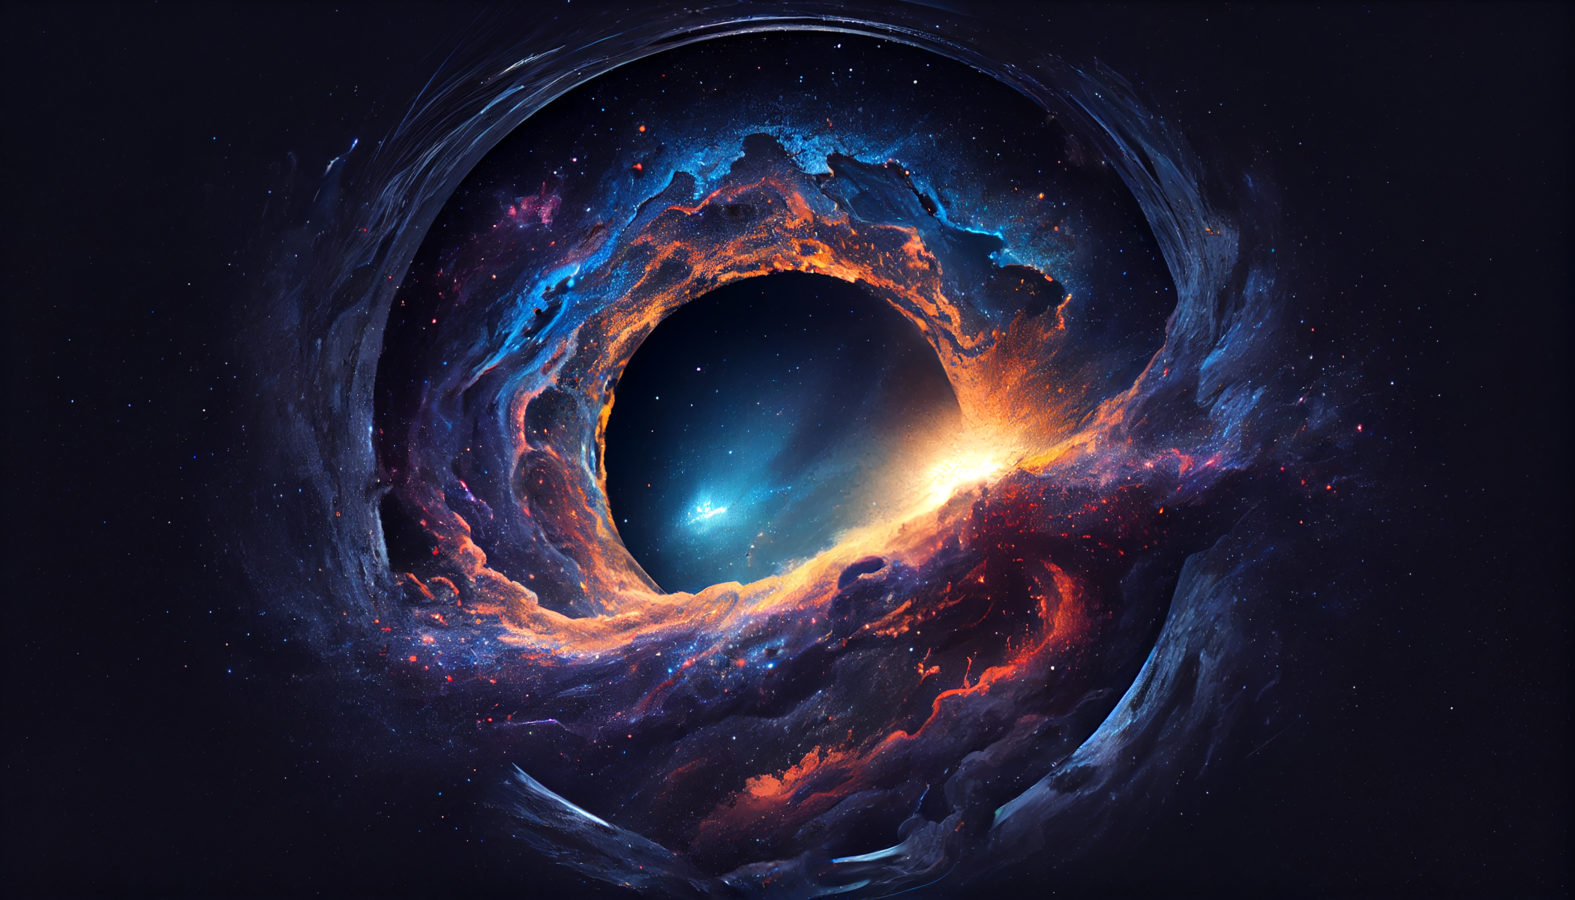 Imagem ilustra buraco negro sobre um artigo do buraco negro mais antigo descoberto